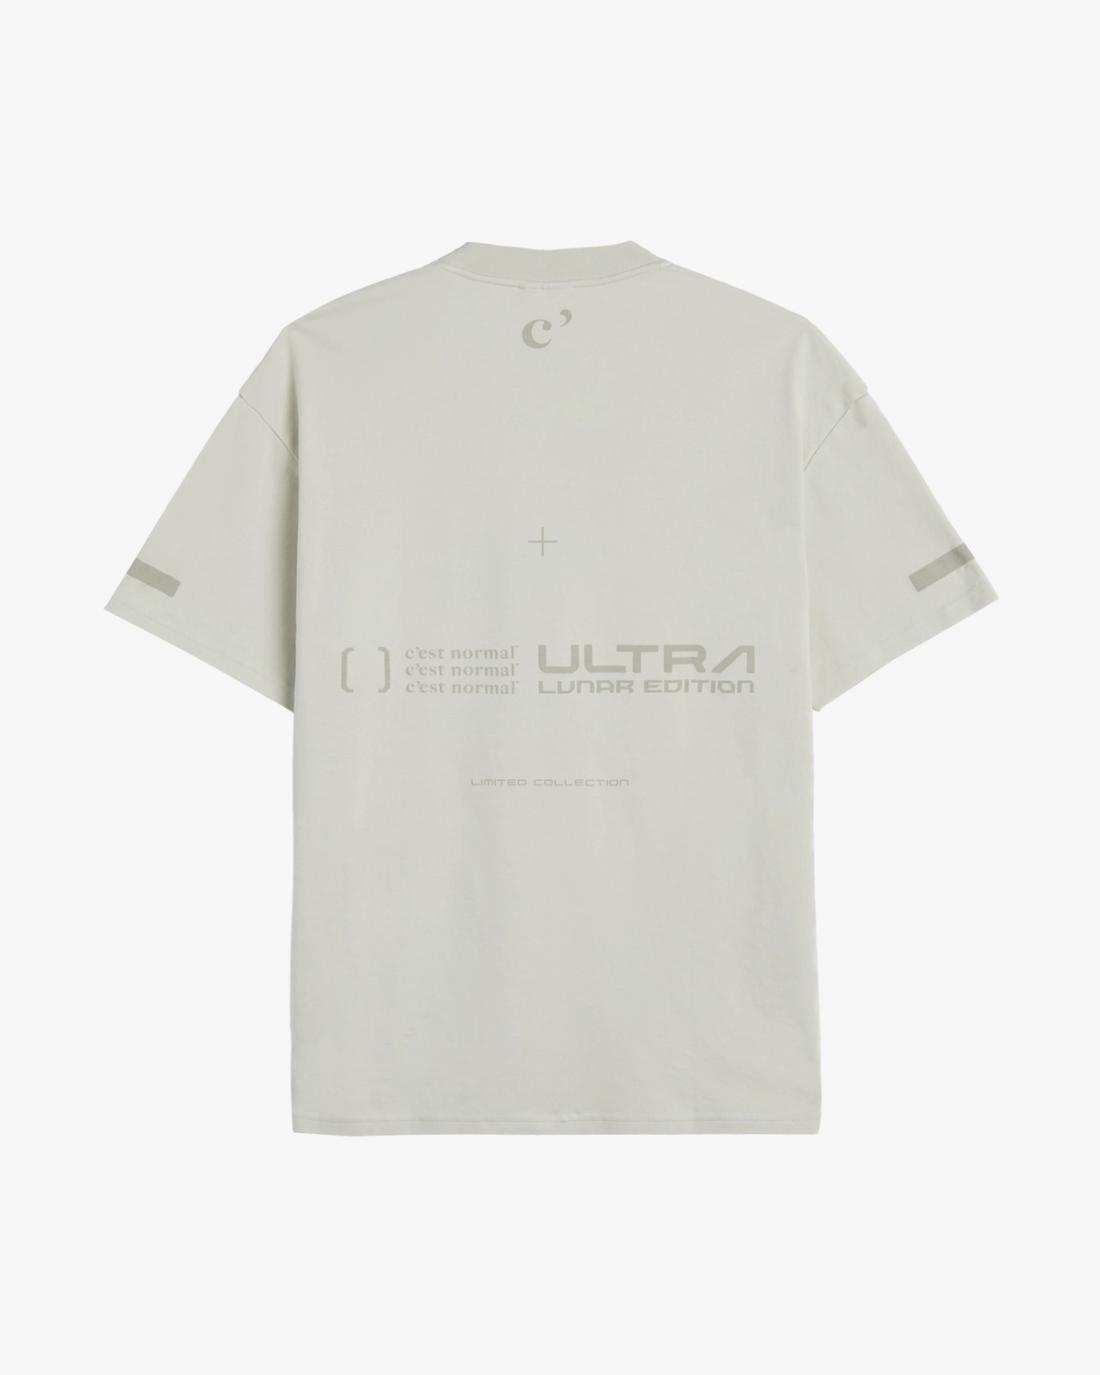 The Lunar T-Shirt